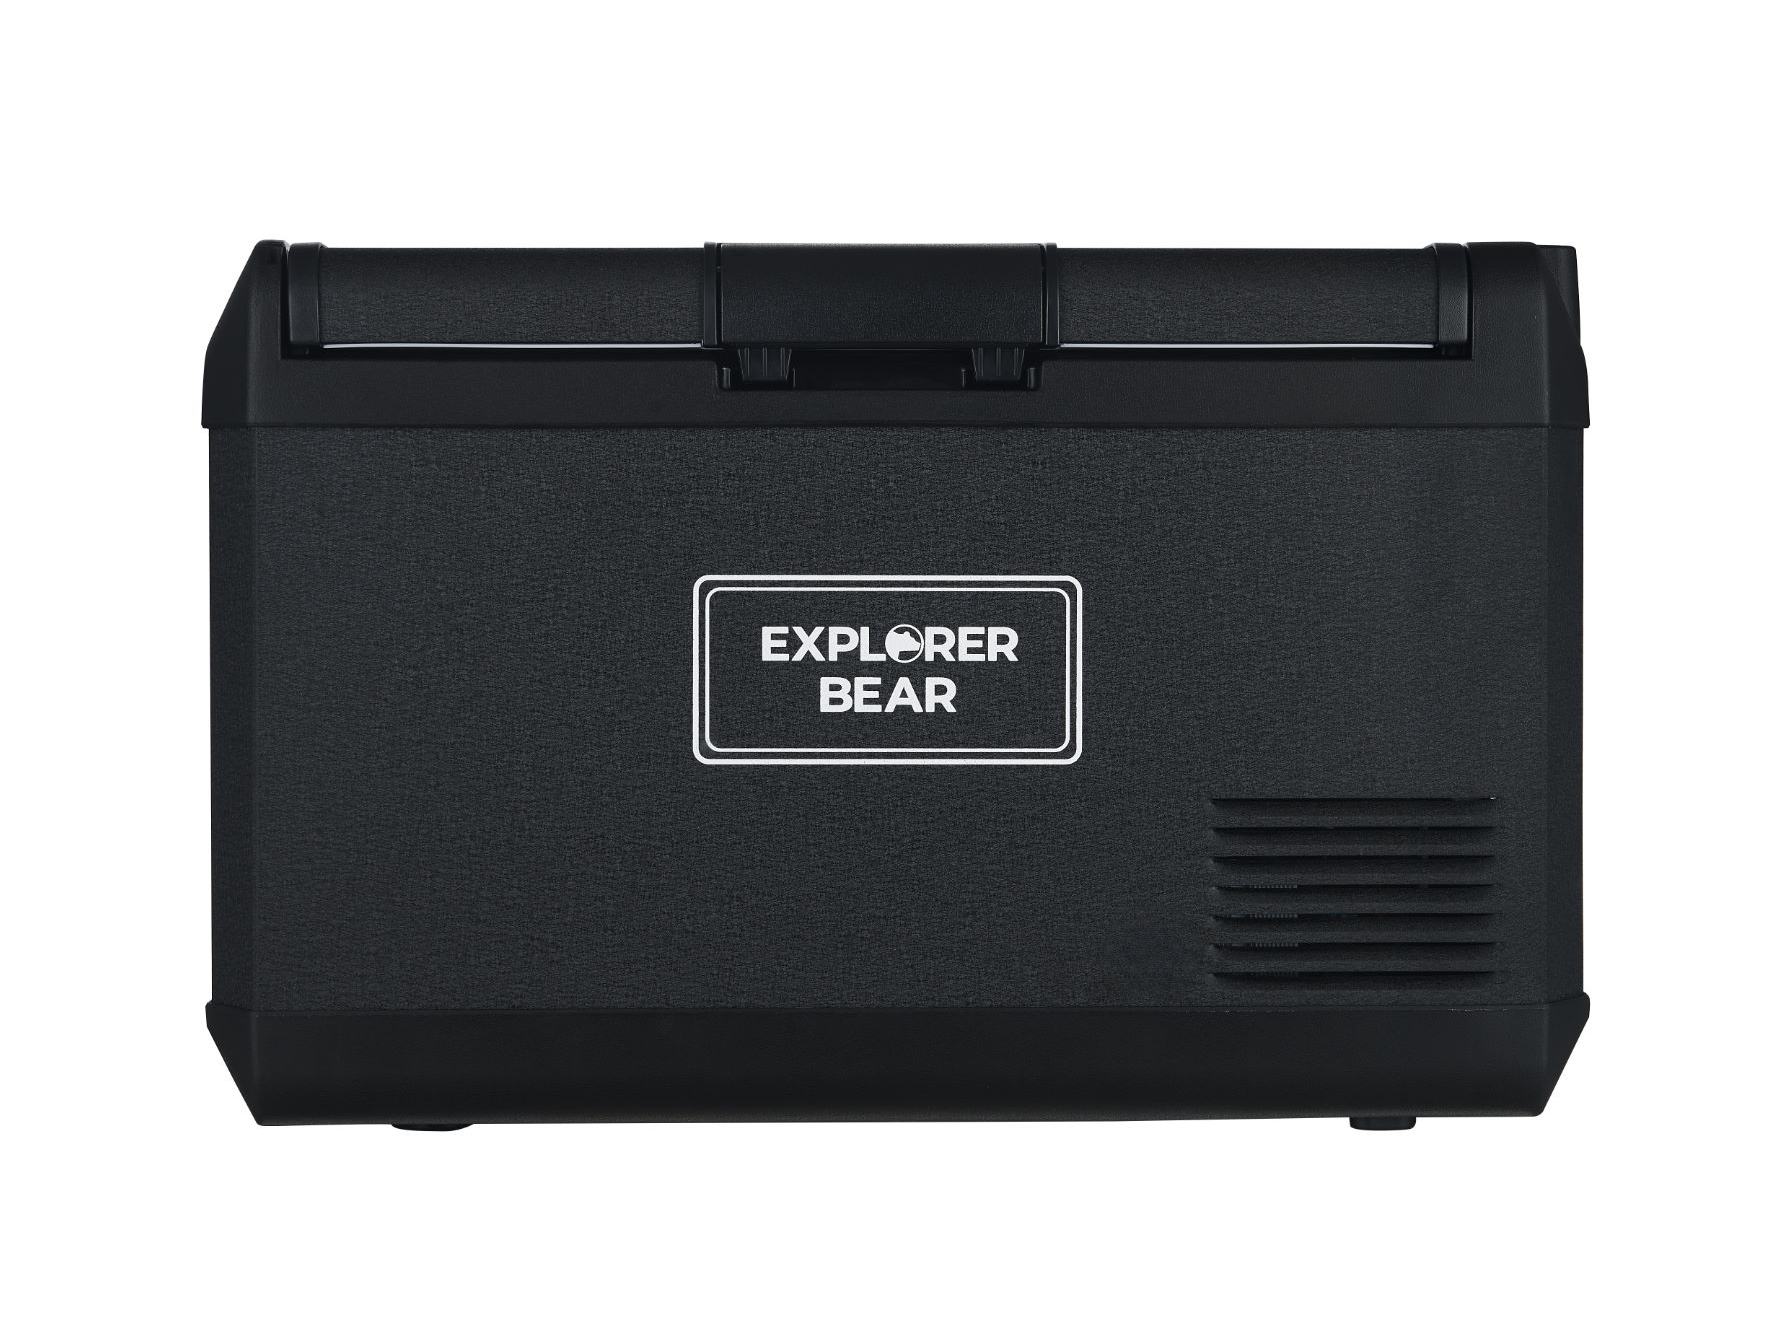 Image of Explorer Bear EX40 42QT/40L 12/24V Portable Electric Fridge Freezer Black ID 757837342383